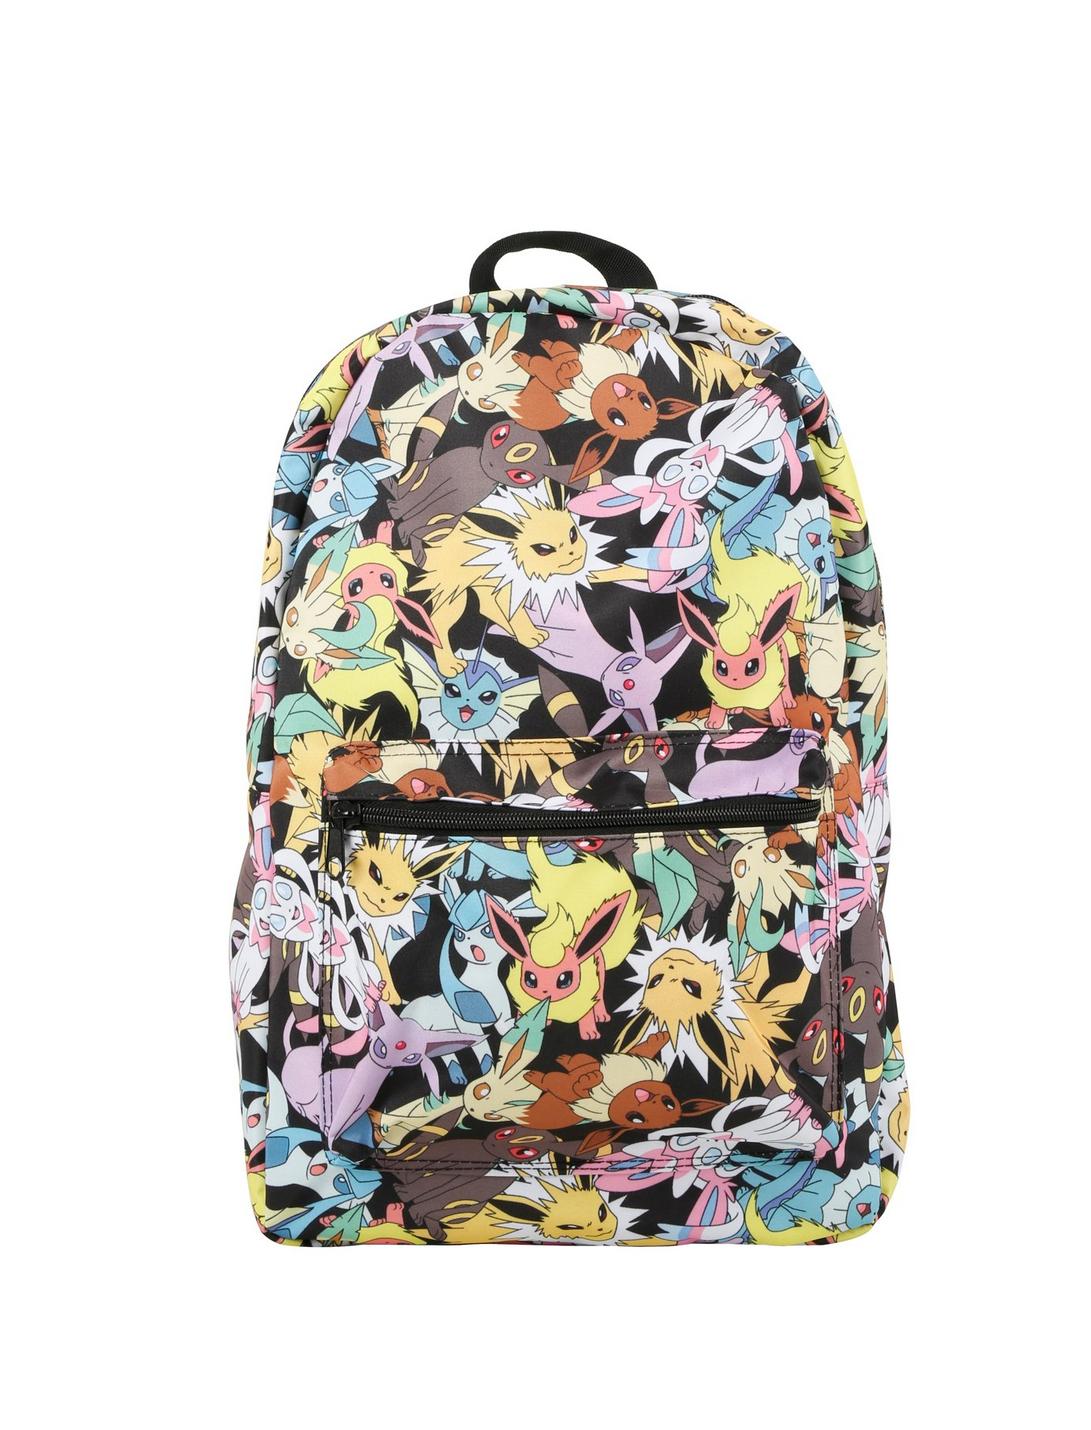 Pokemon Eevee Evolutions Backpack, , hi-res